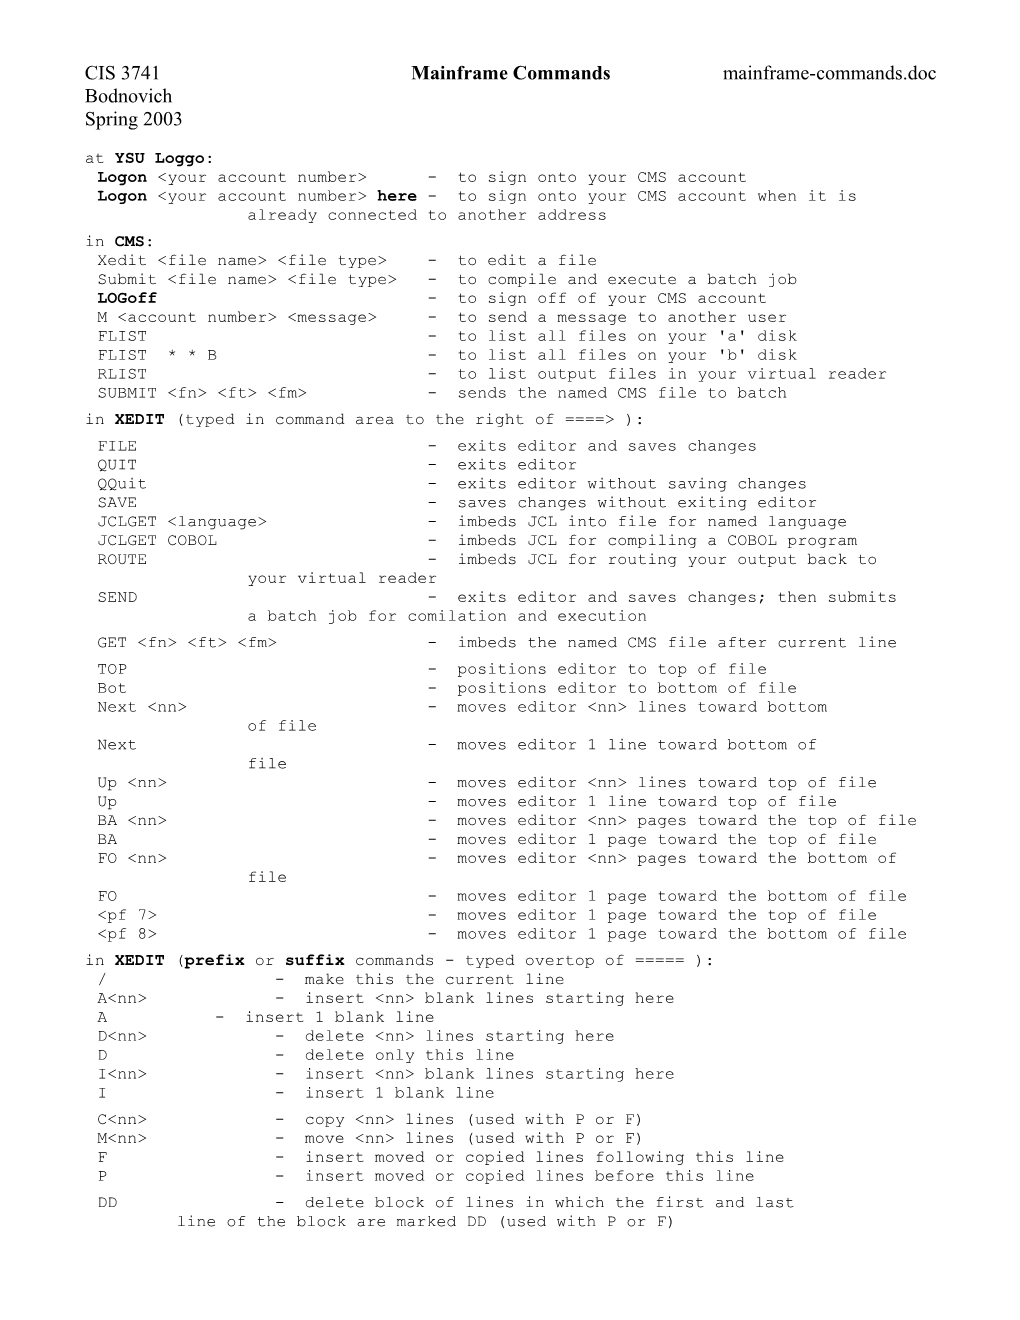 CIS 3741 Mainframe Commands Mainframe-Commands